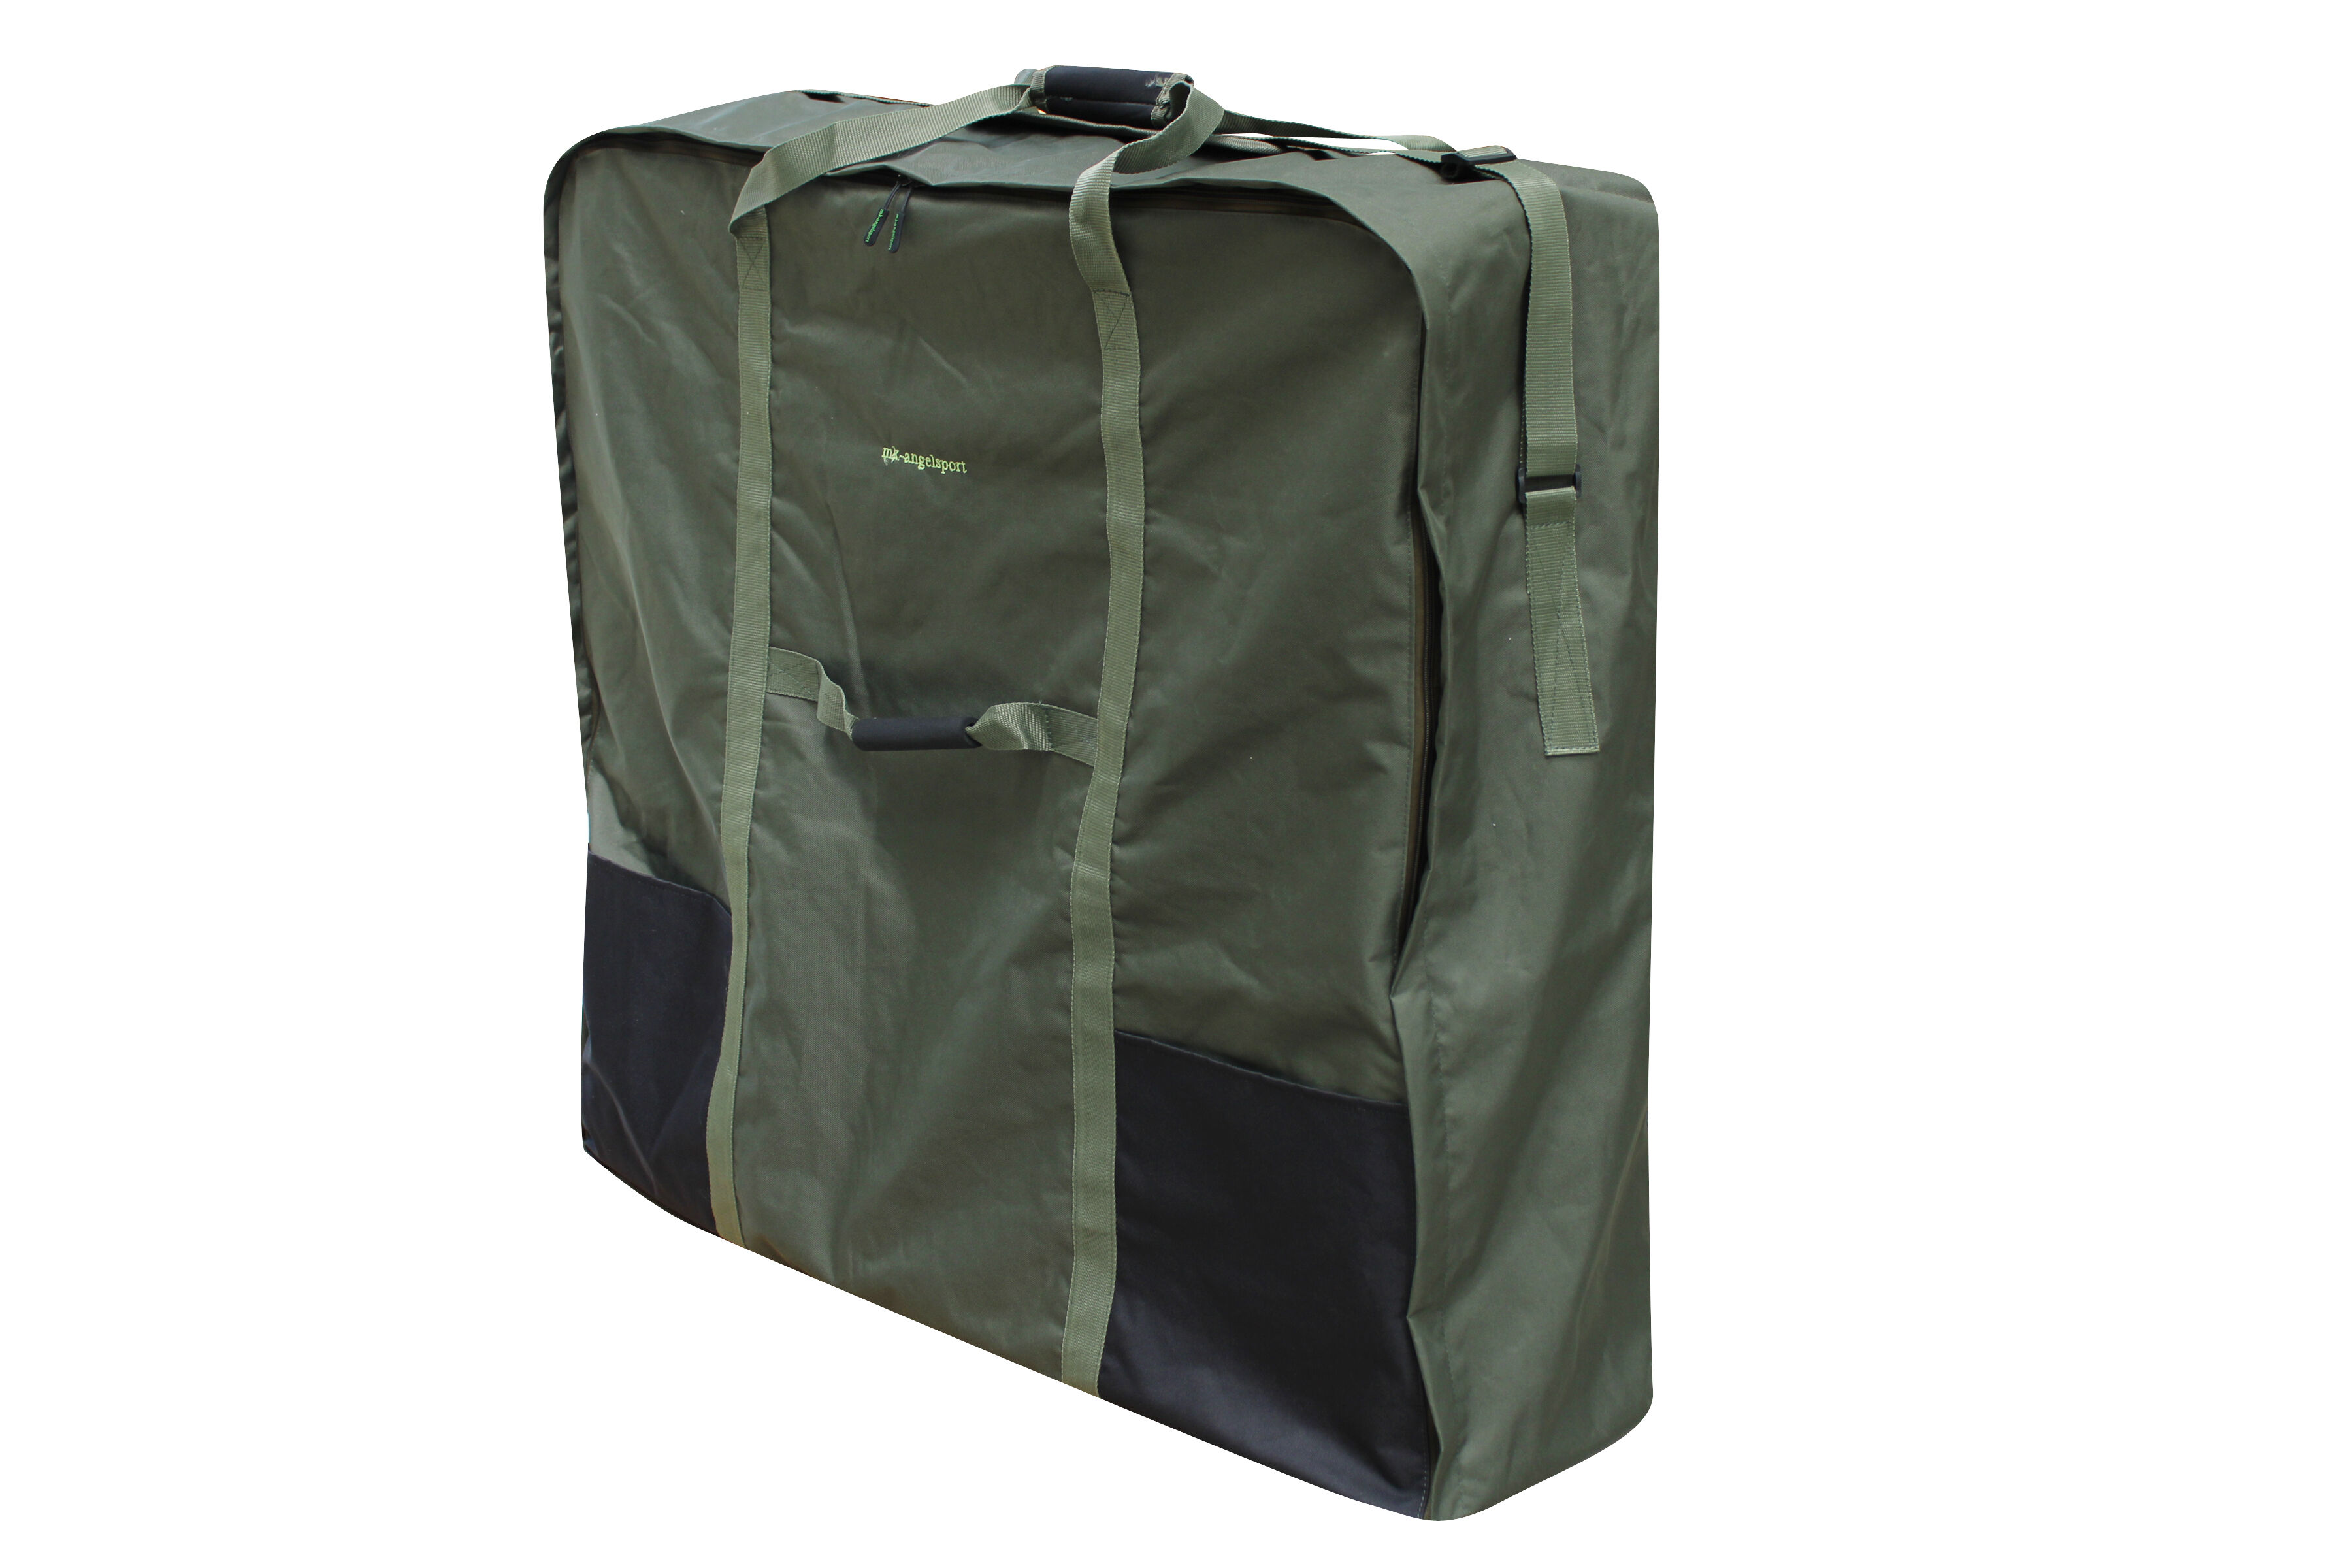 Die Transporttasche für Angelliegen ist sehr beliebt als Aufbewahrungstasche für Campingliegen.